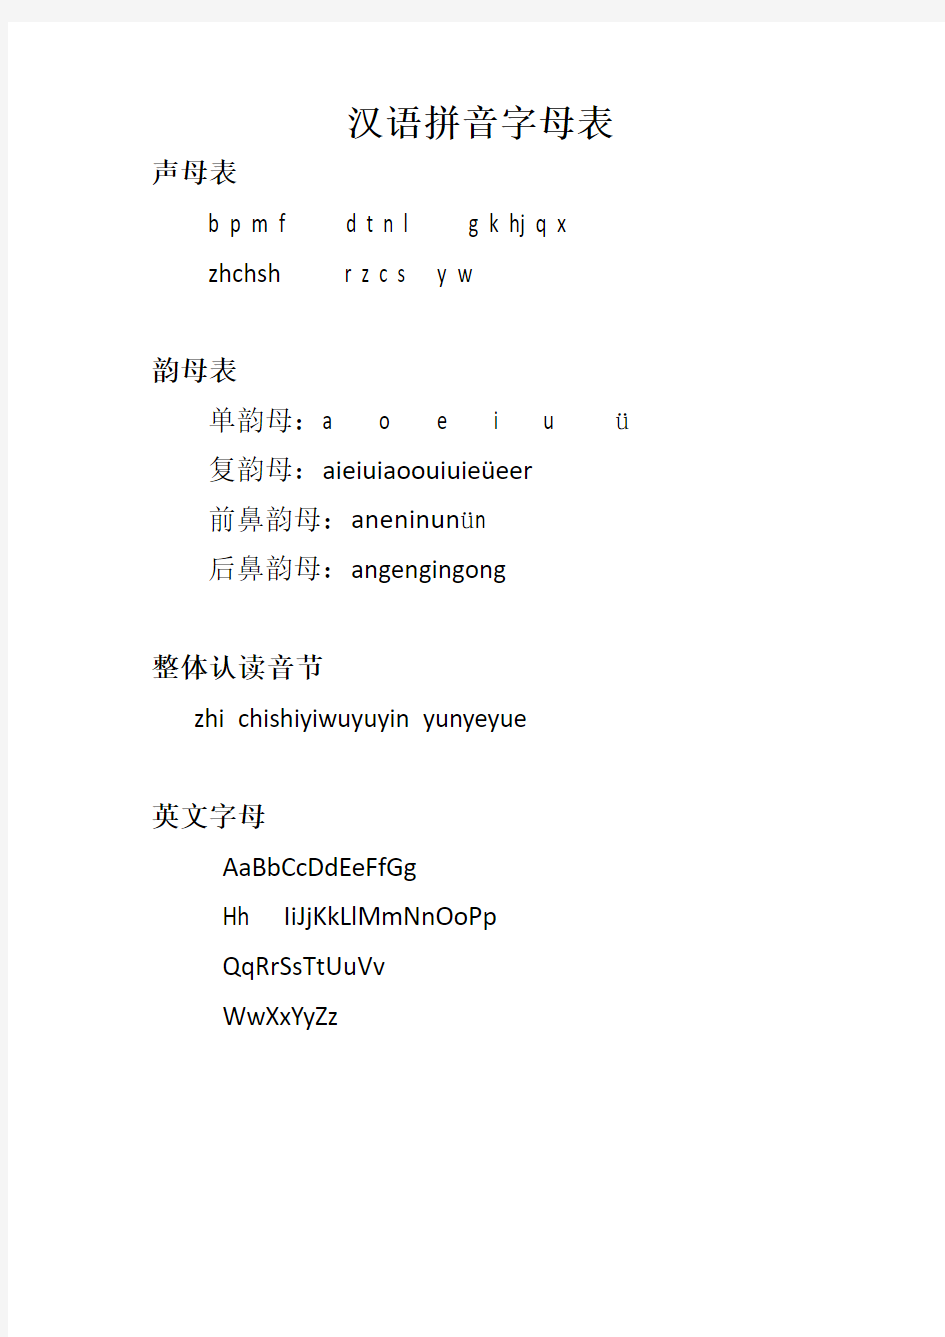 汉语拼音字母与英文表